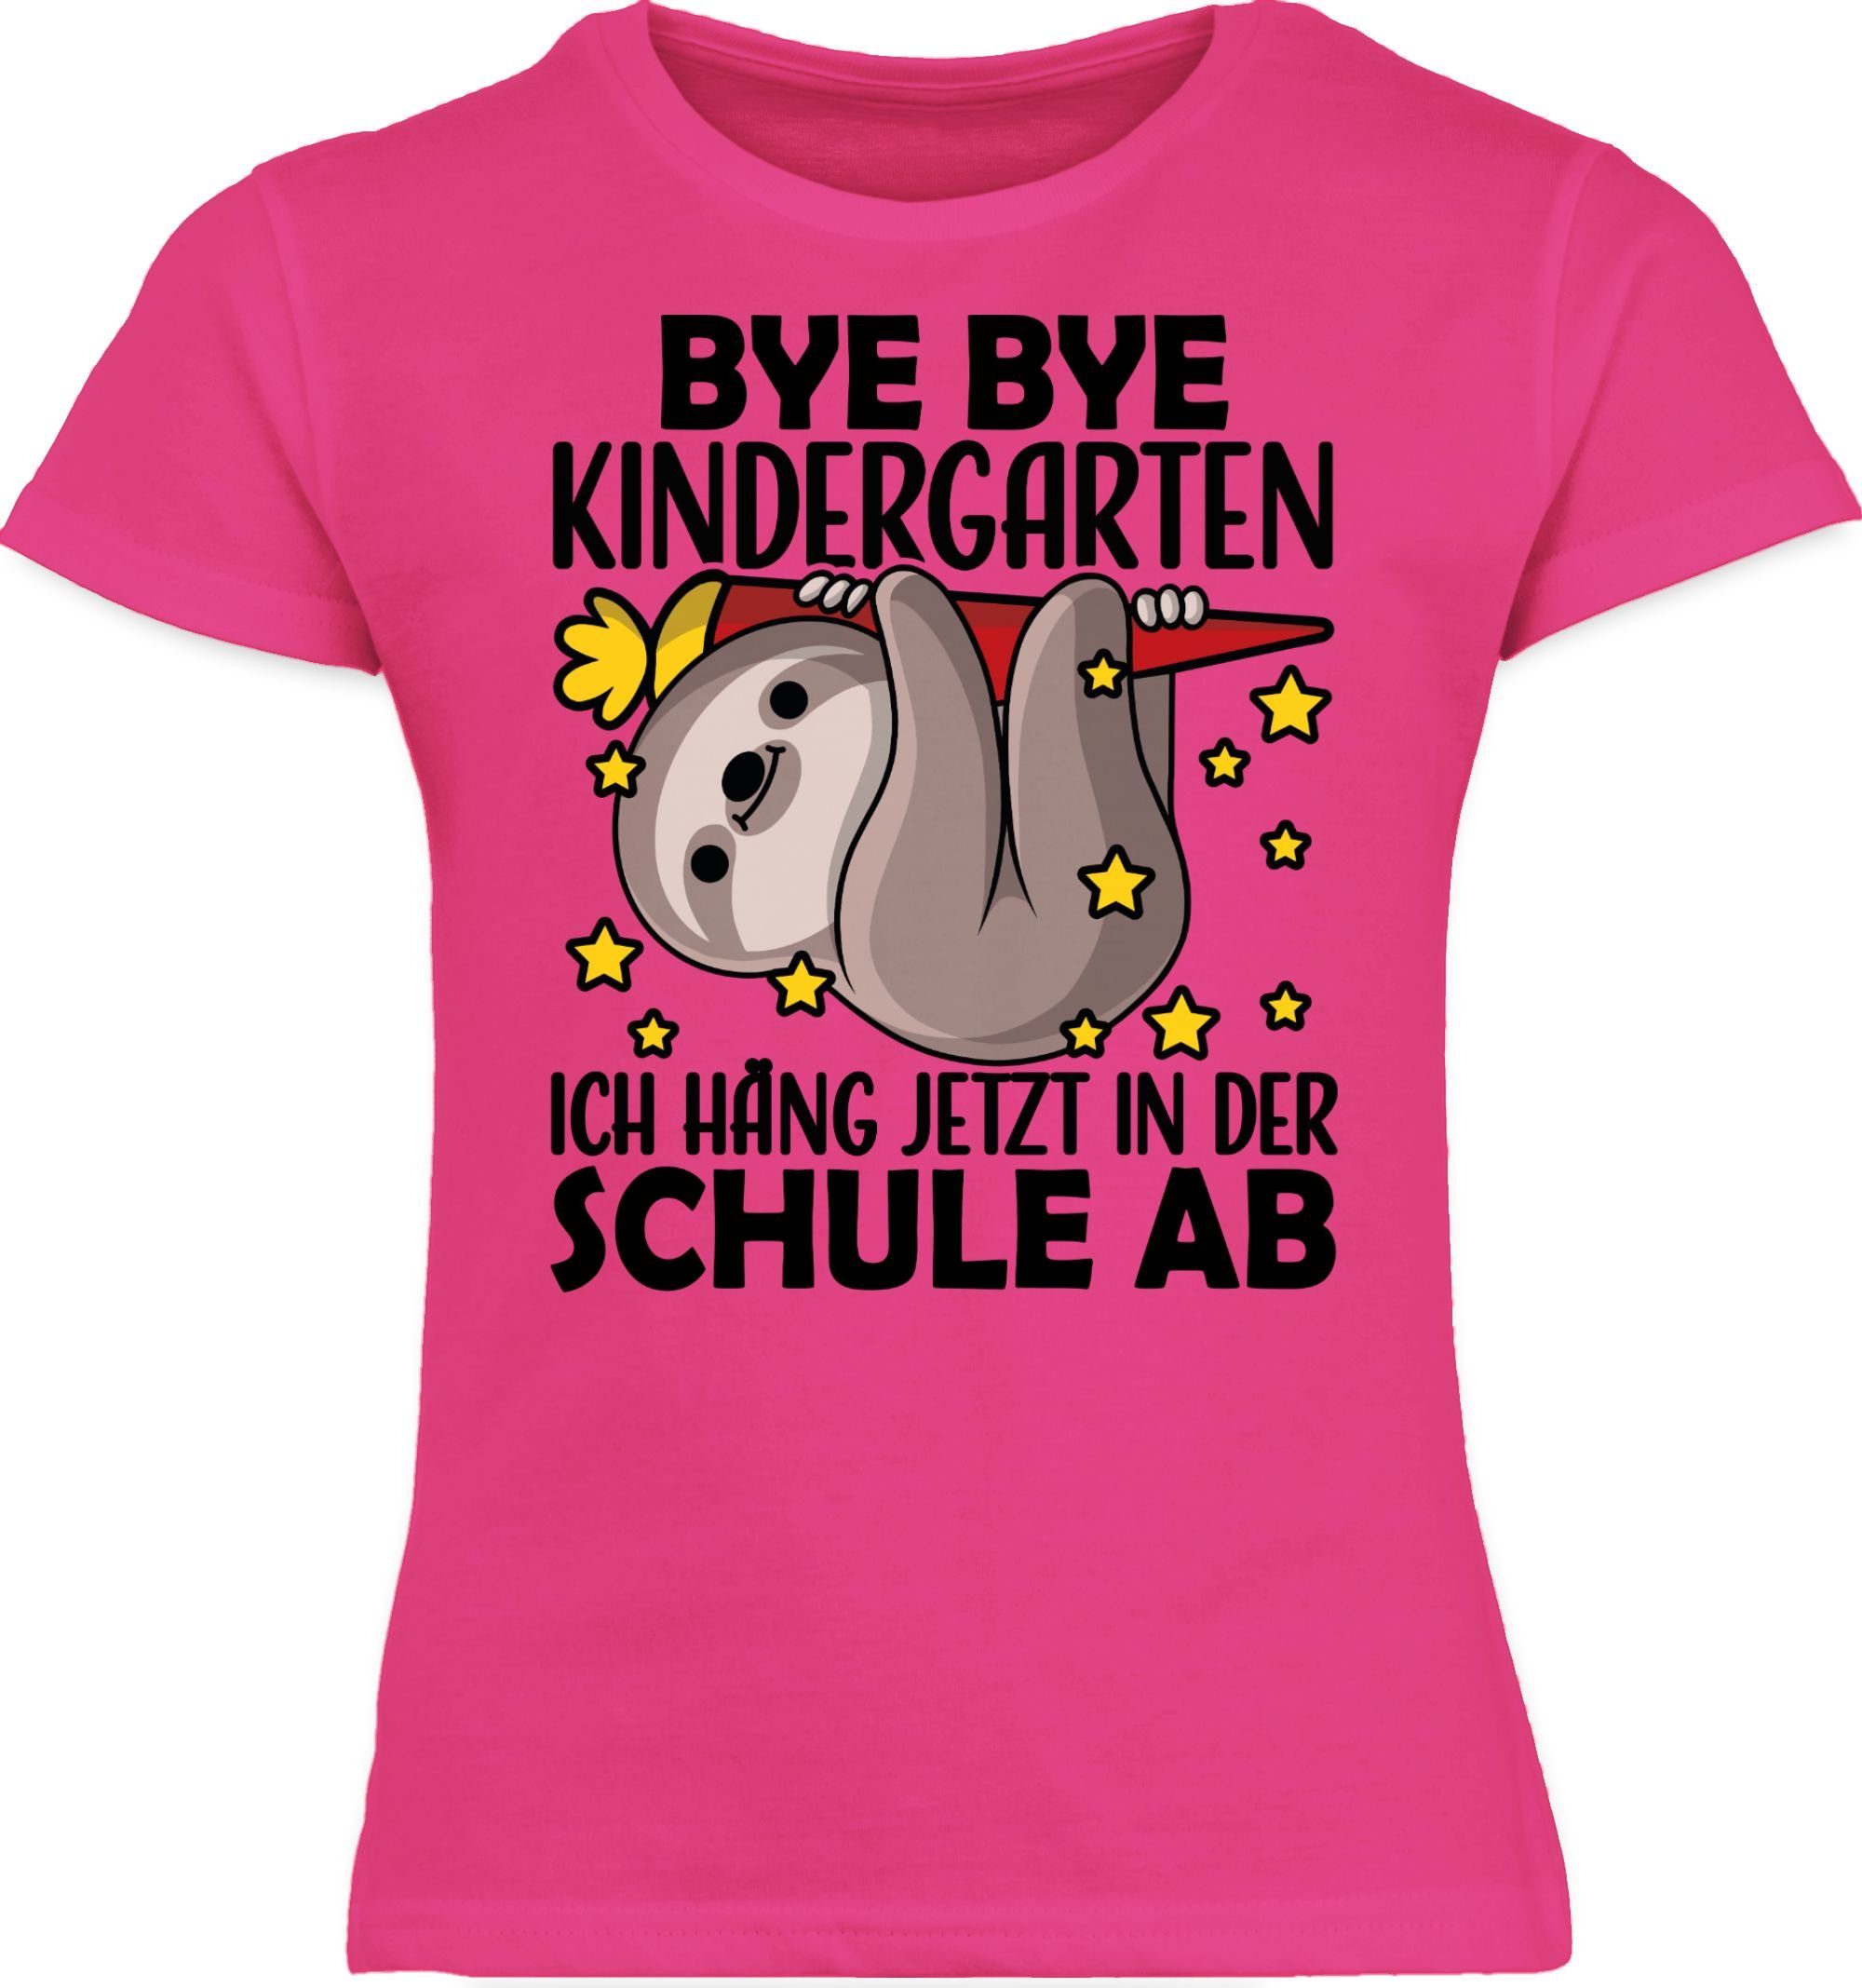 Shirtracer T-Shirt Bye Bye Kindergarten Mädchen ab Fuchsia - Schule der mit hänge jetzt ich in s Einschulung 1 Faultier